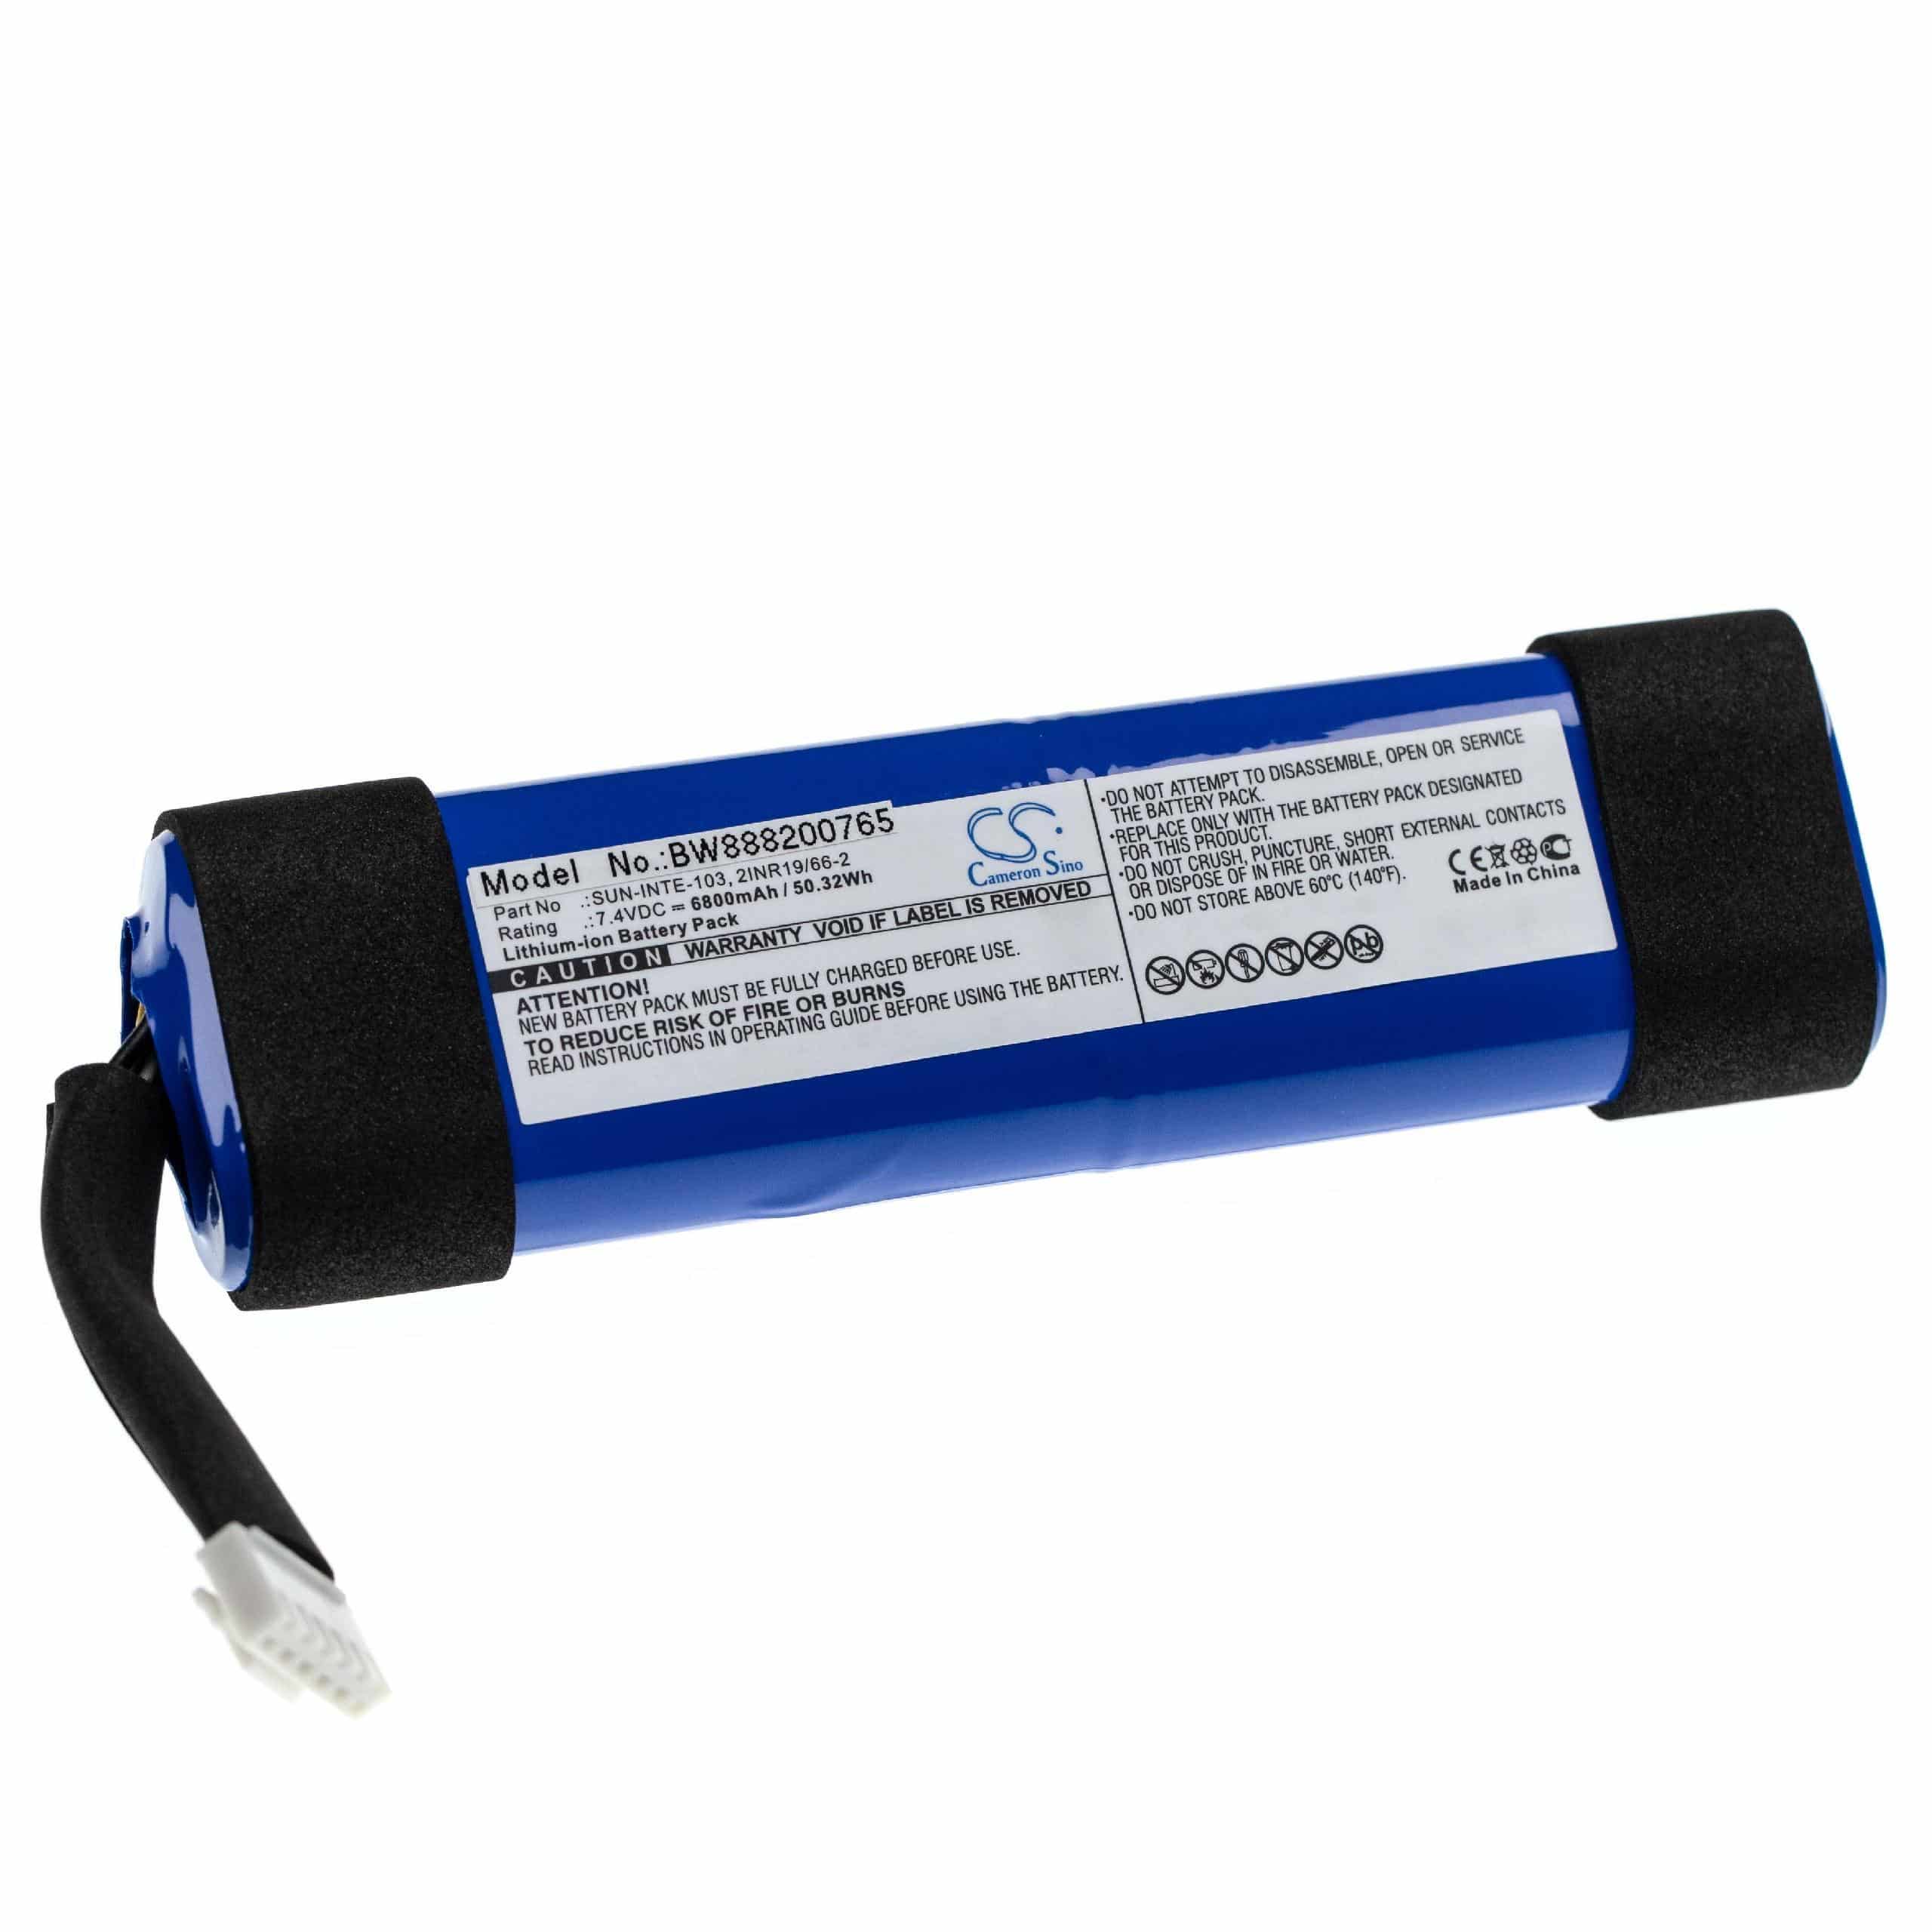 Batterie remplace JBL 2INR19/66-2, SUN-INTE-103 pour enceinte JBL - 6800mAh 7,4V Li-ion